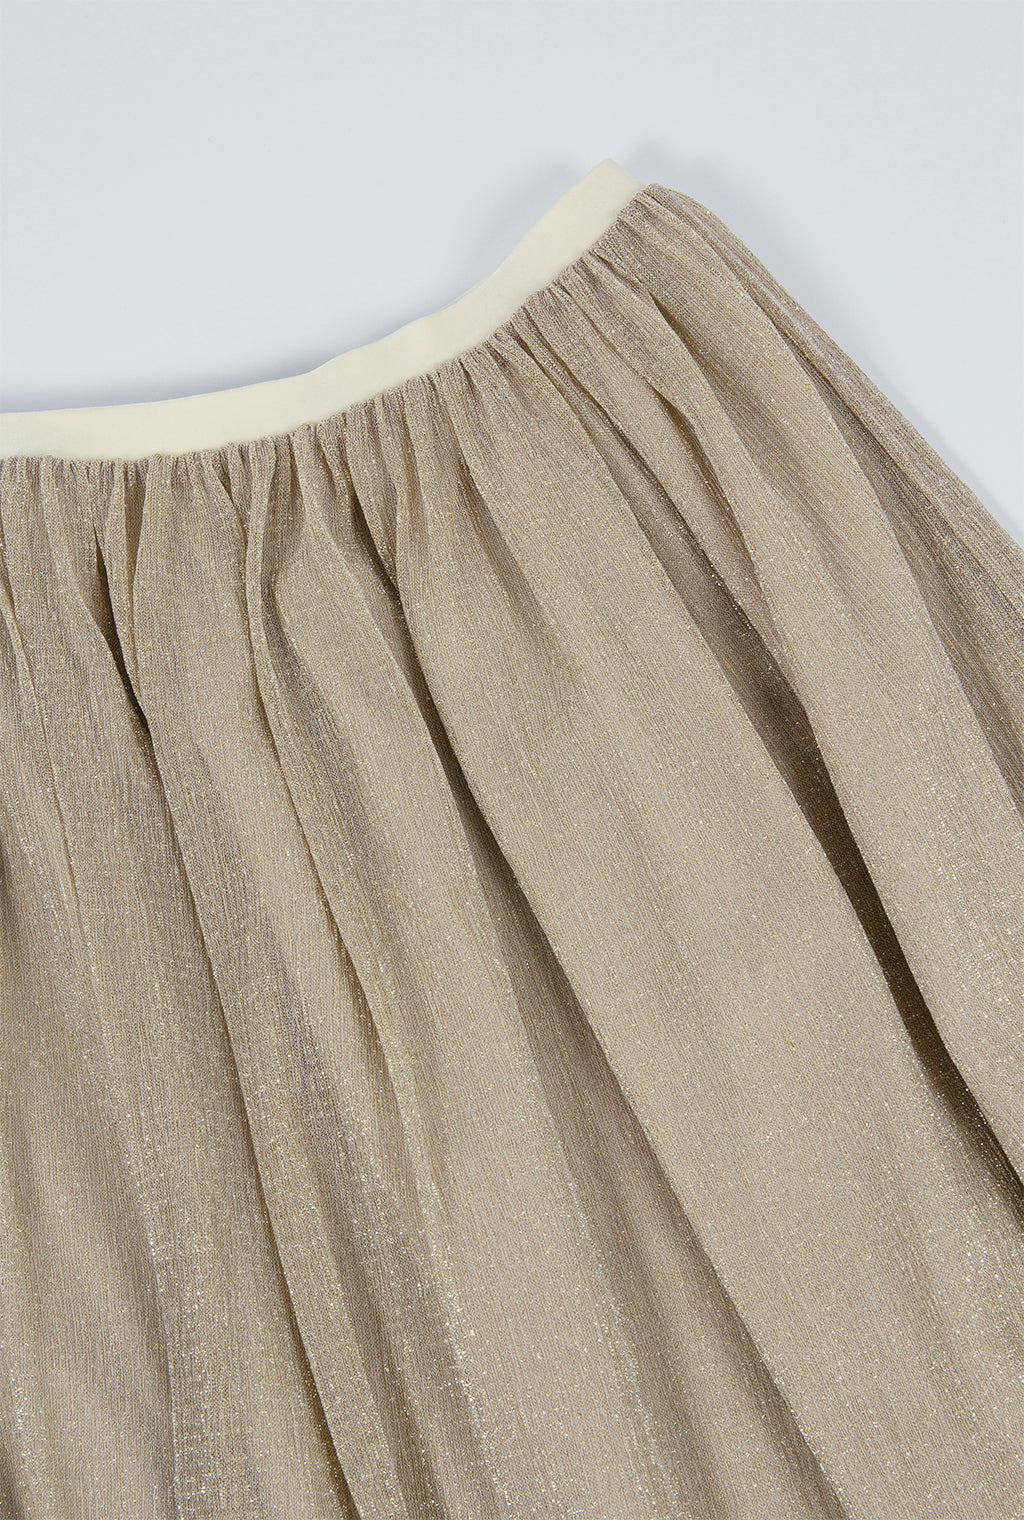 Tulle Skirt / Pre-order